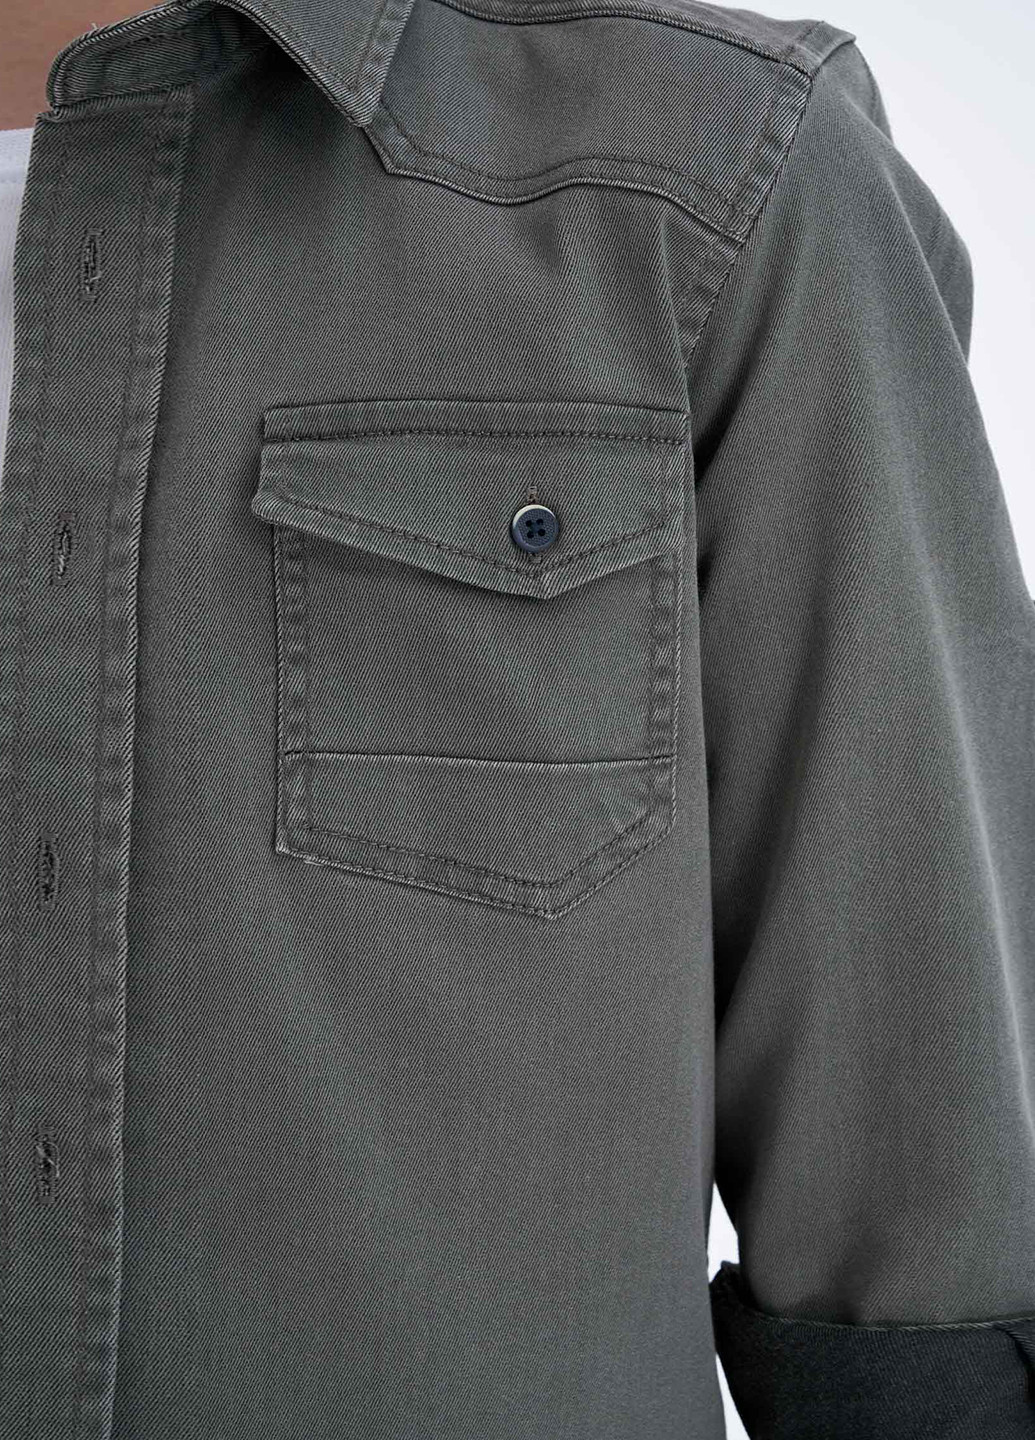 Оливковковая (хаки) джинсовая рубашка DeFacto